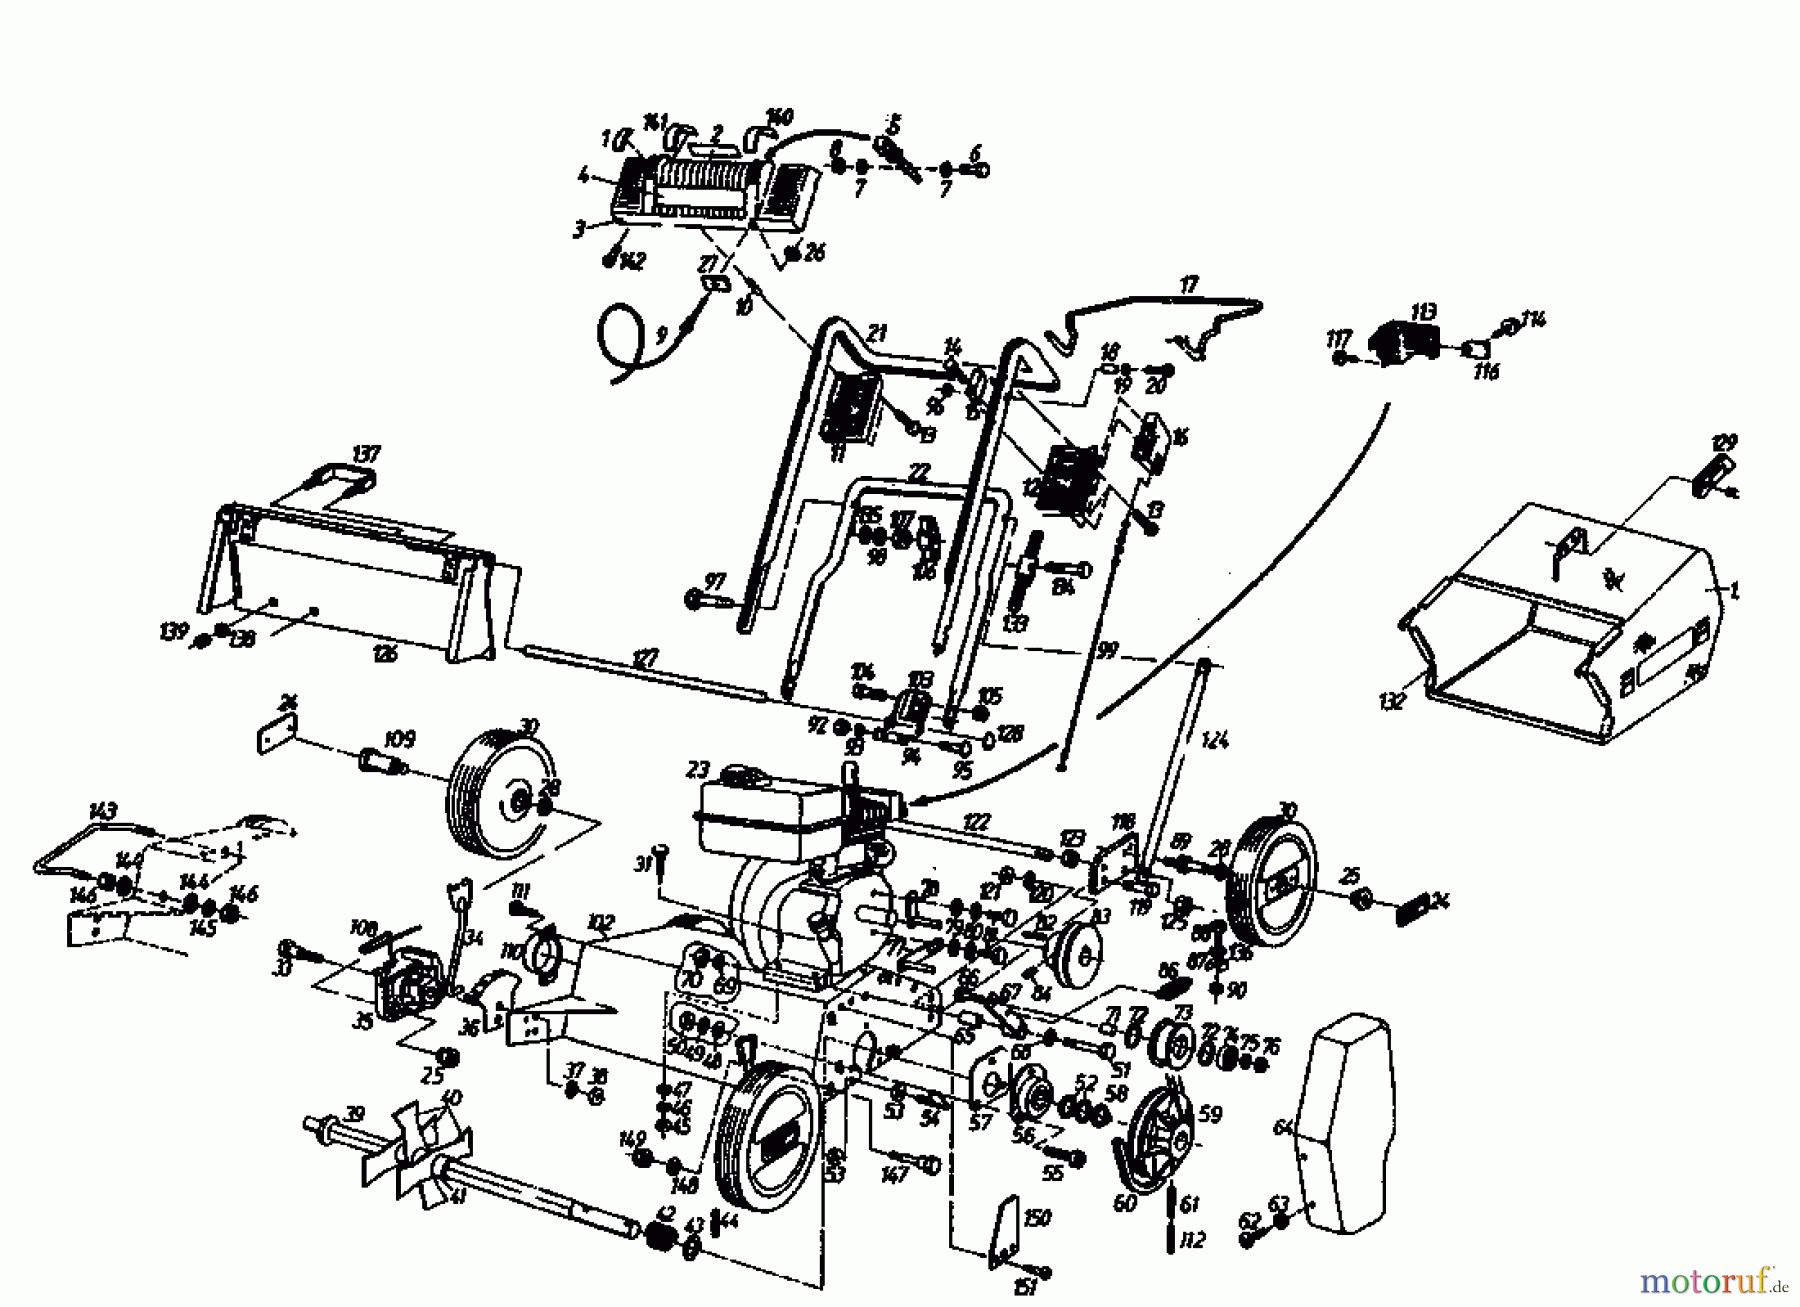  Gutbrod Scarificateur thermique MV 404 04010.01  (1994) Machine de base